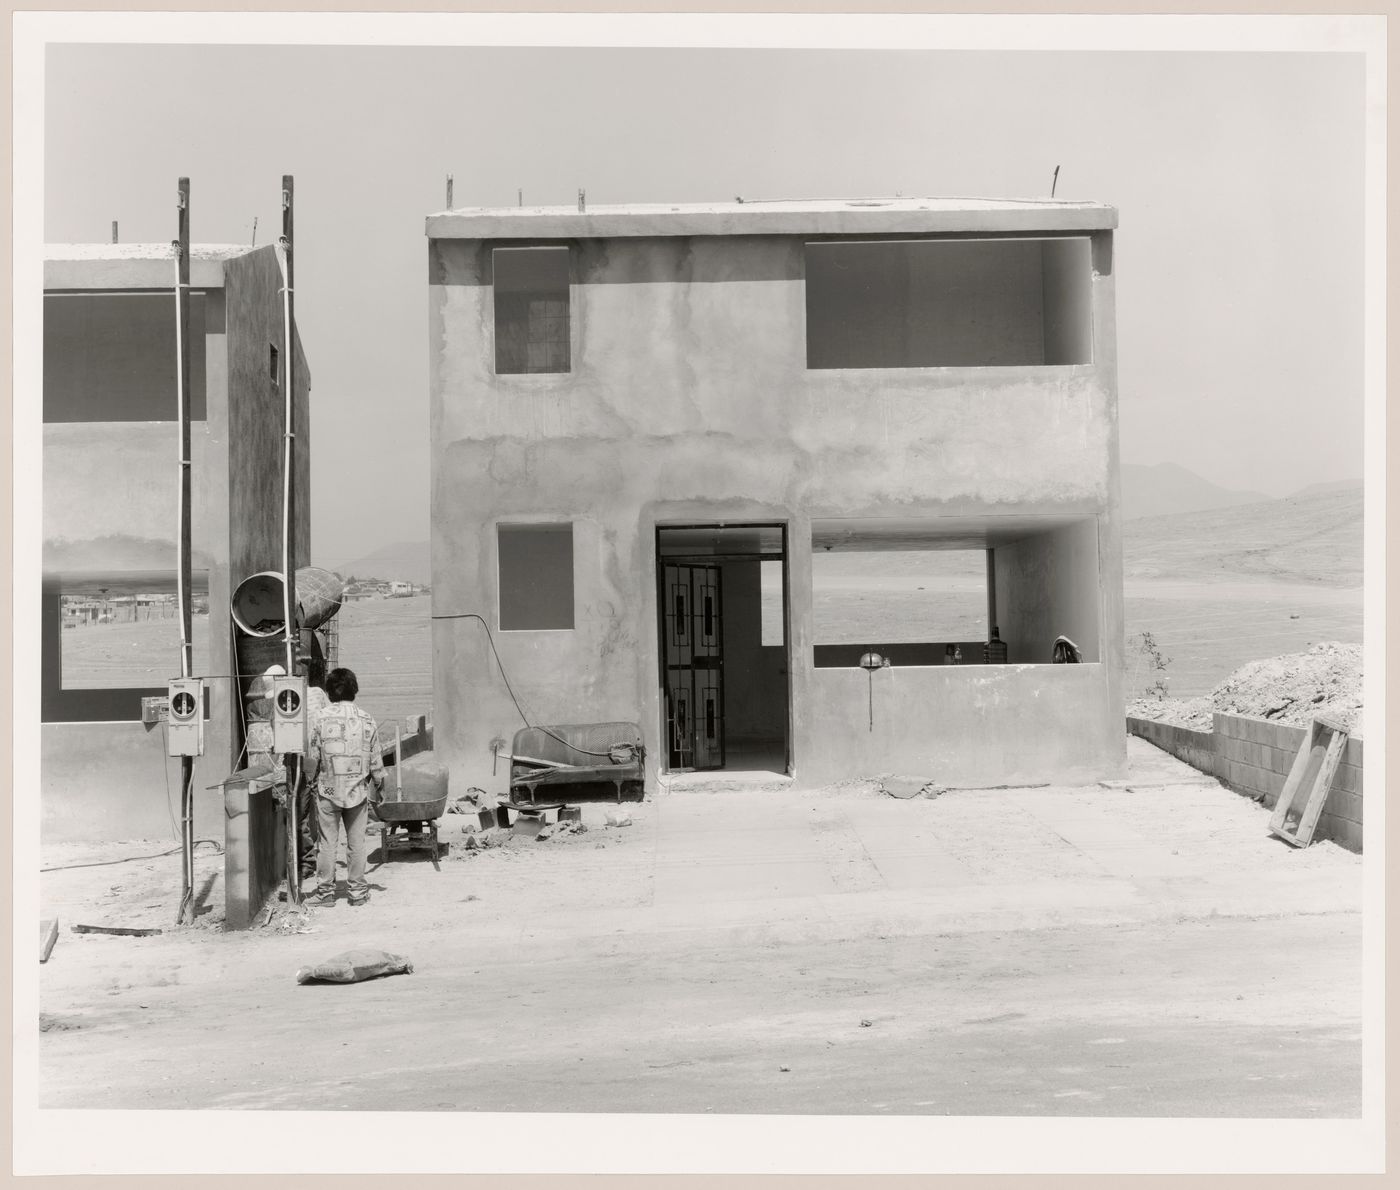 View of houses under construction, Mesa de Otay, Tijuana, Baja California, Mexico